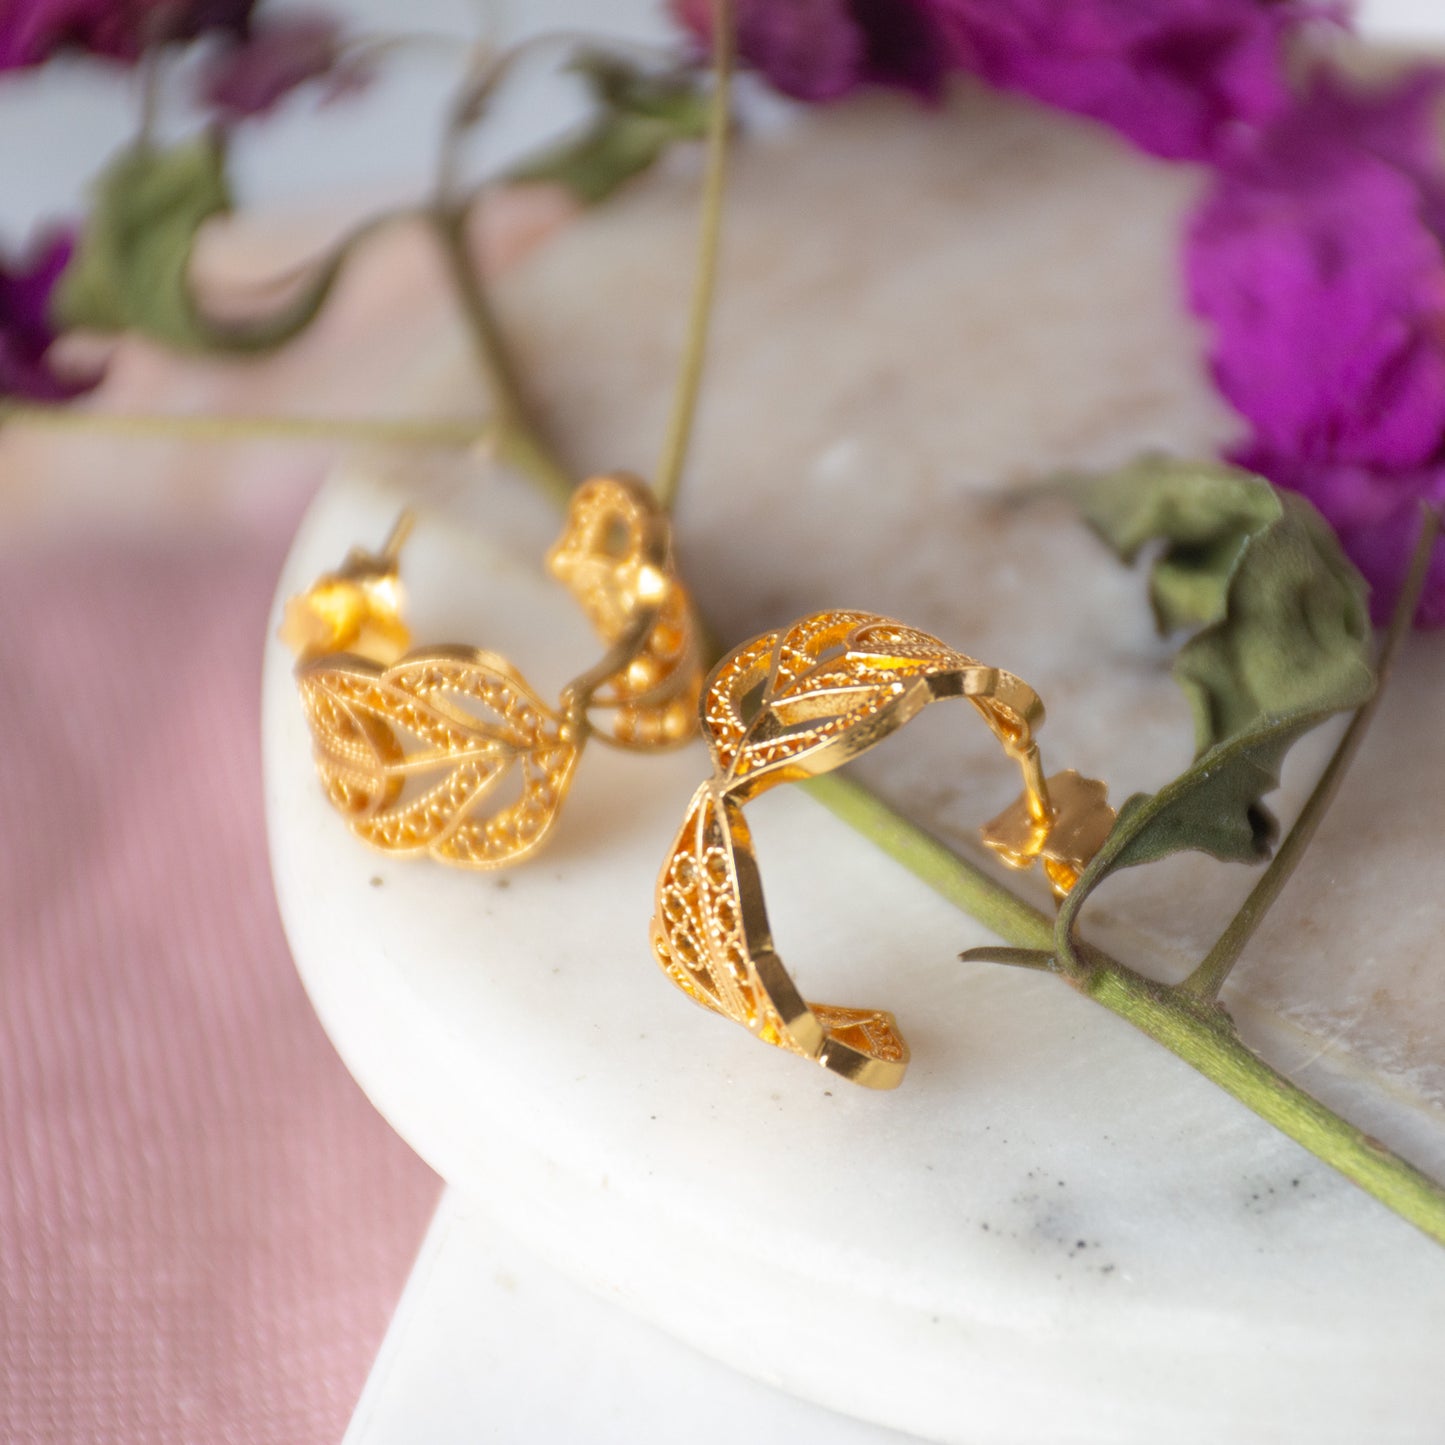 Aretes cangonga o aros en filigrana momposina elaborados en plata 9.80 con chapado en oro de 24 kilates u oro rosado y protección en laca cataforética.